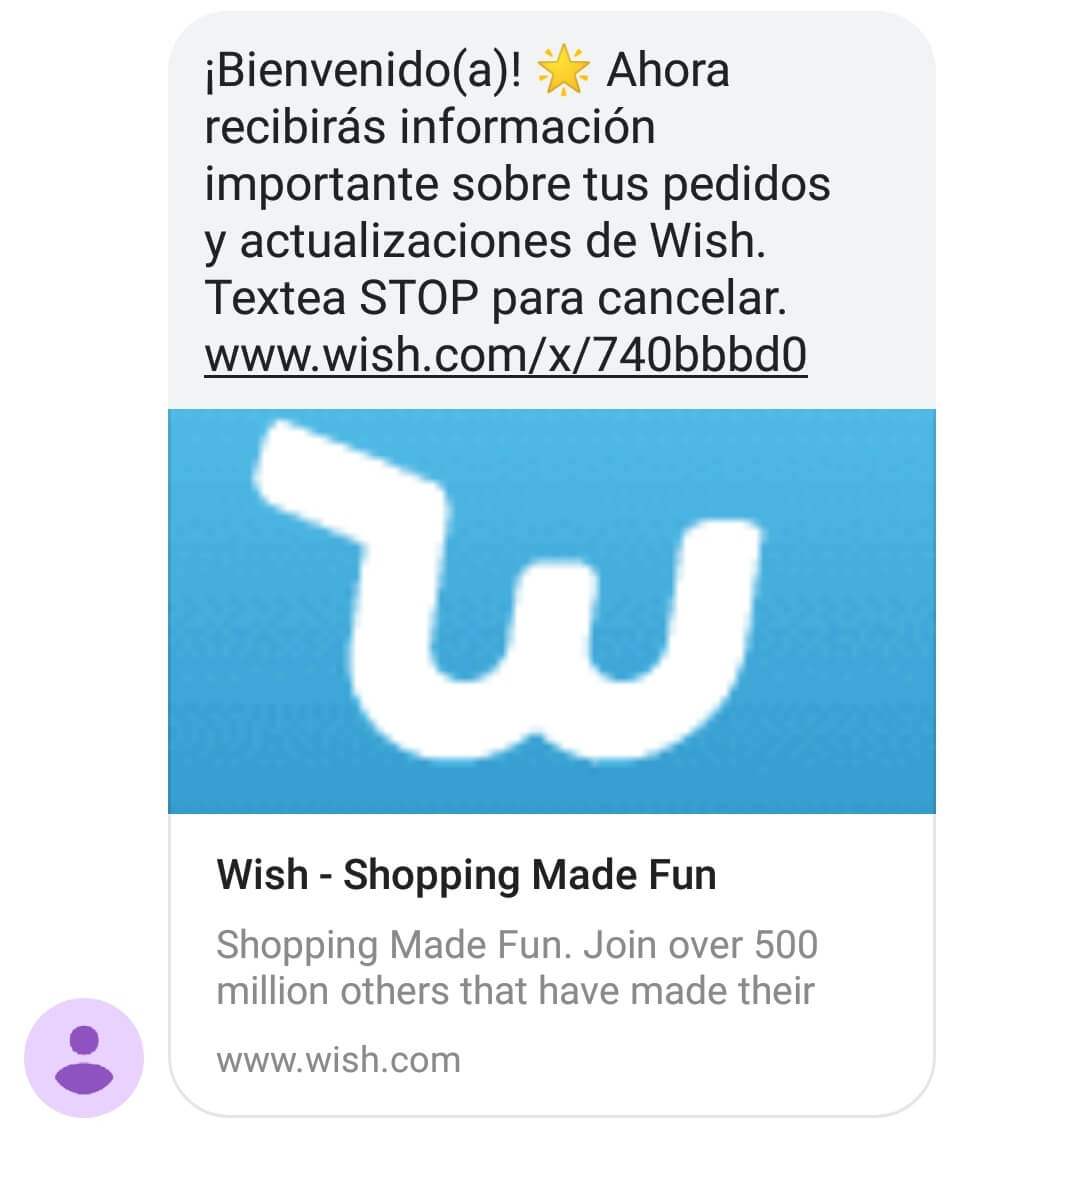 Marketing por sms. Ejemplo de Wish.